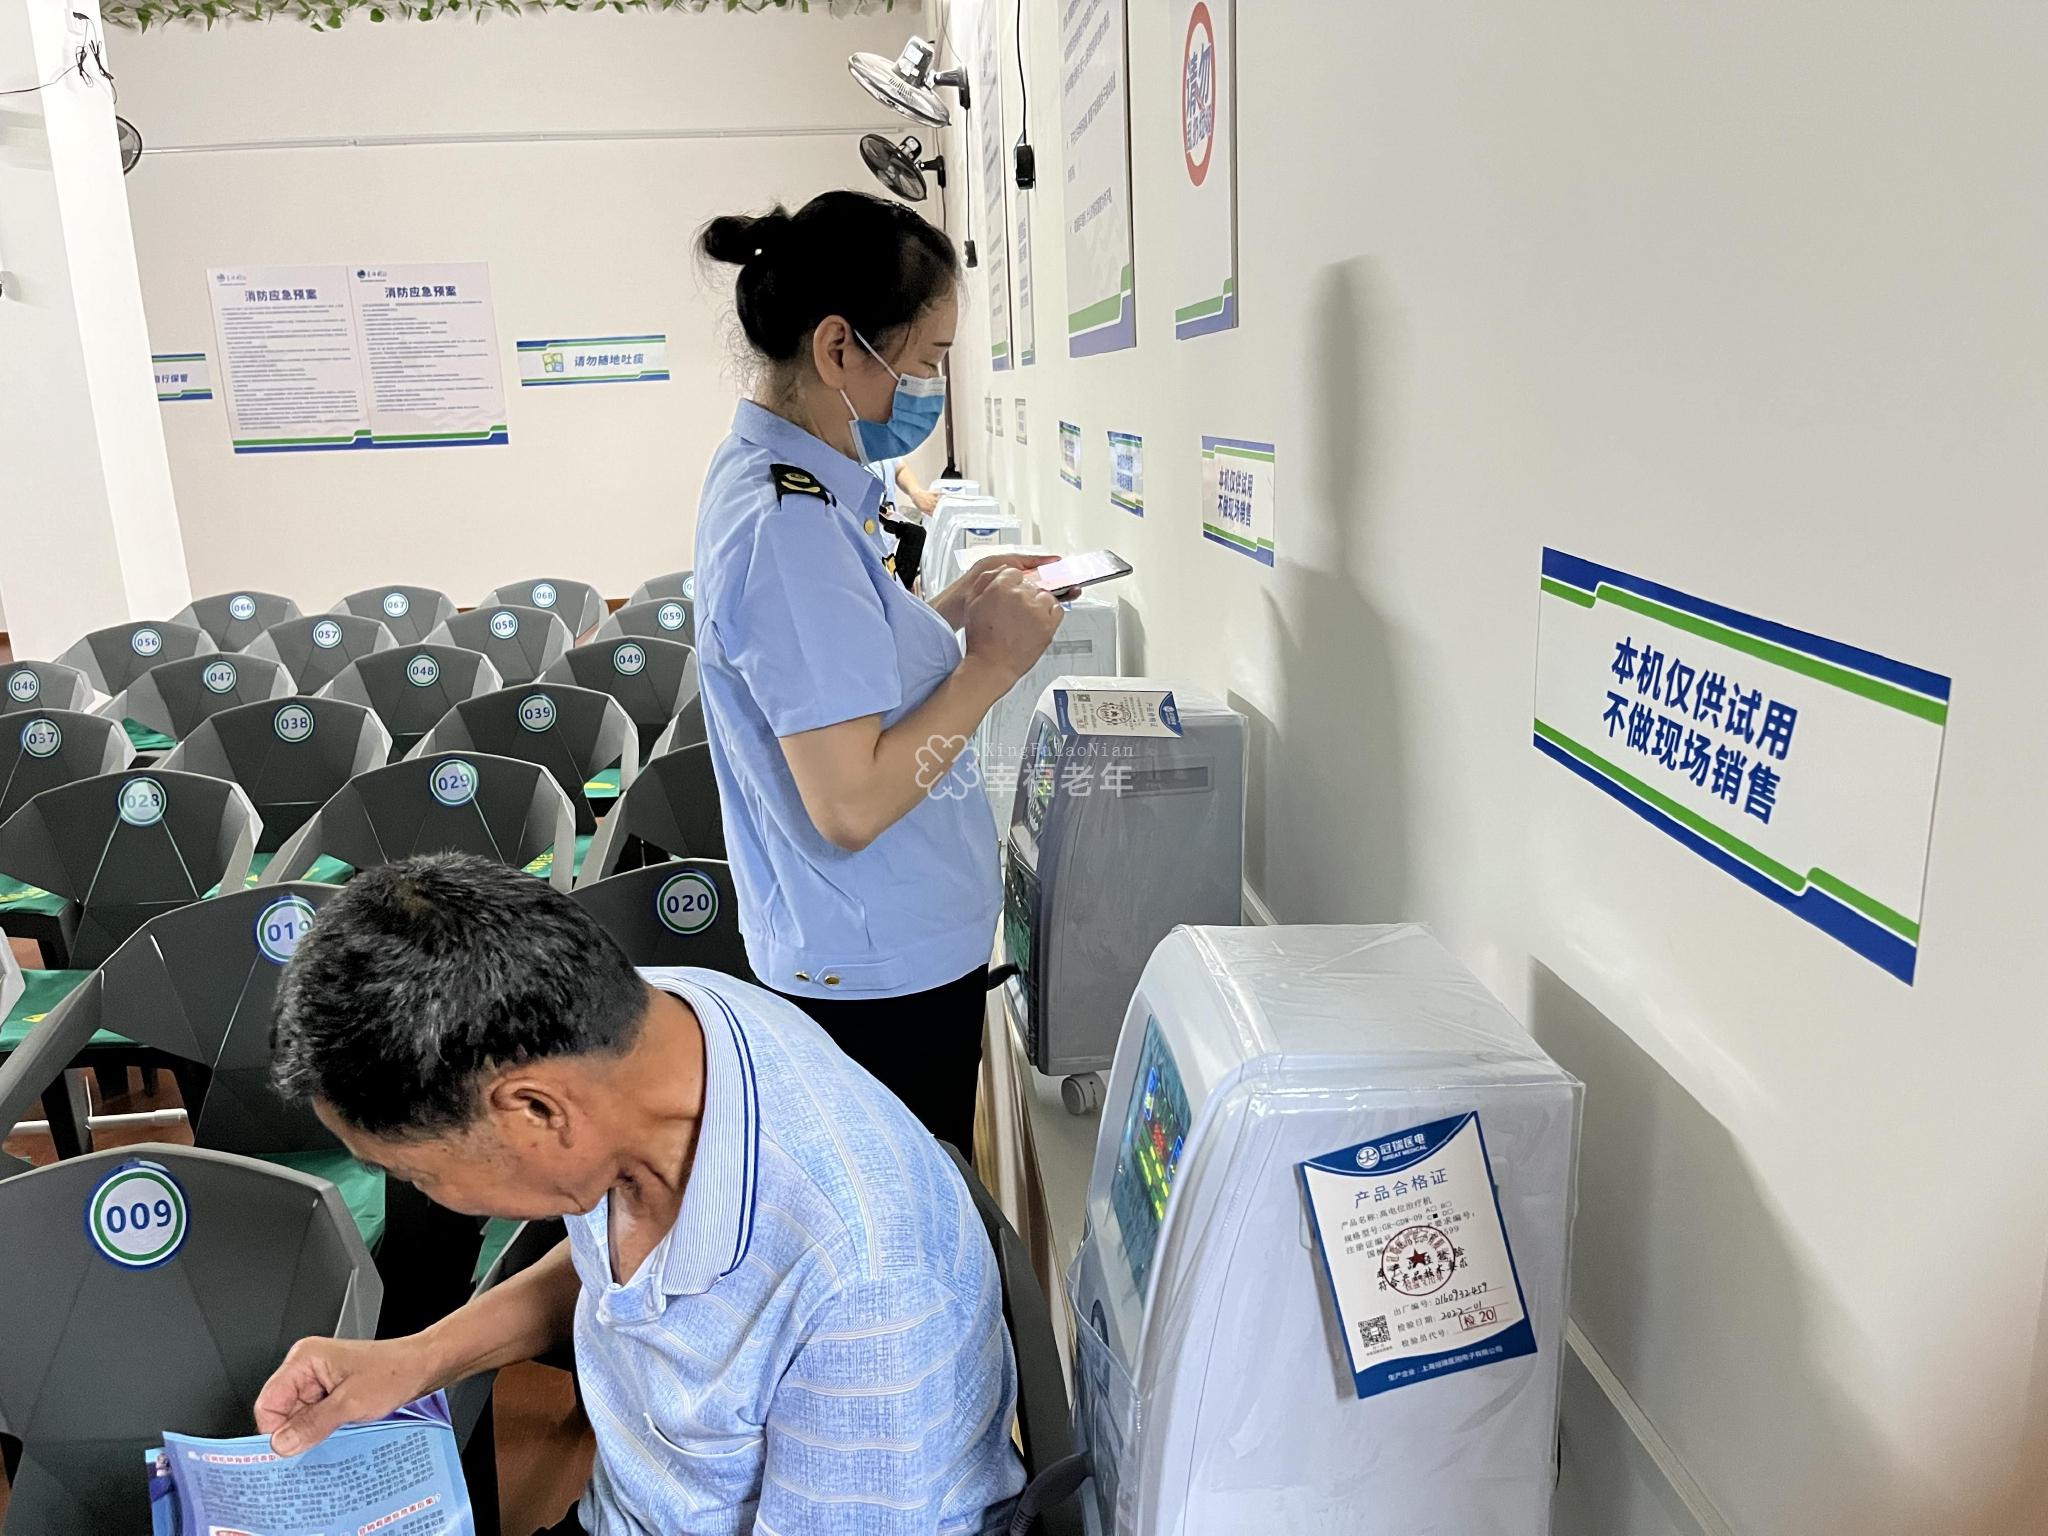 柳城县市场监管局执法人员在检查核对高电位治疗机相关信息。资料图片